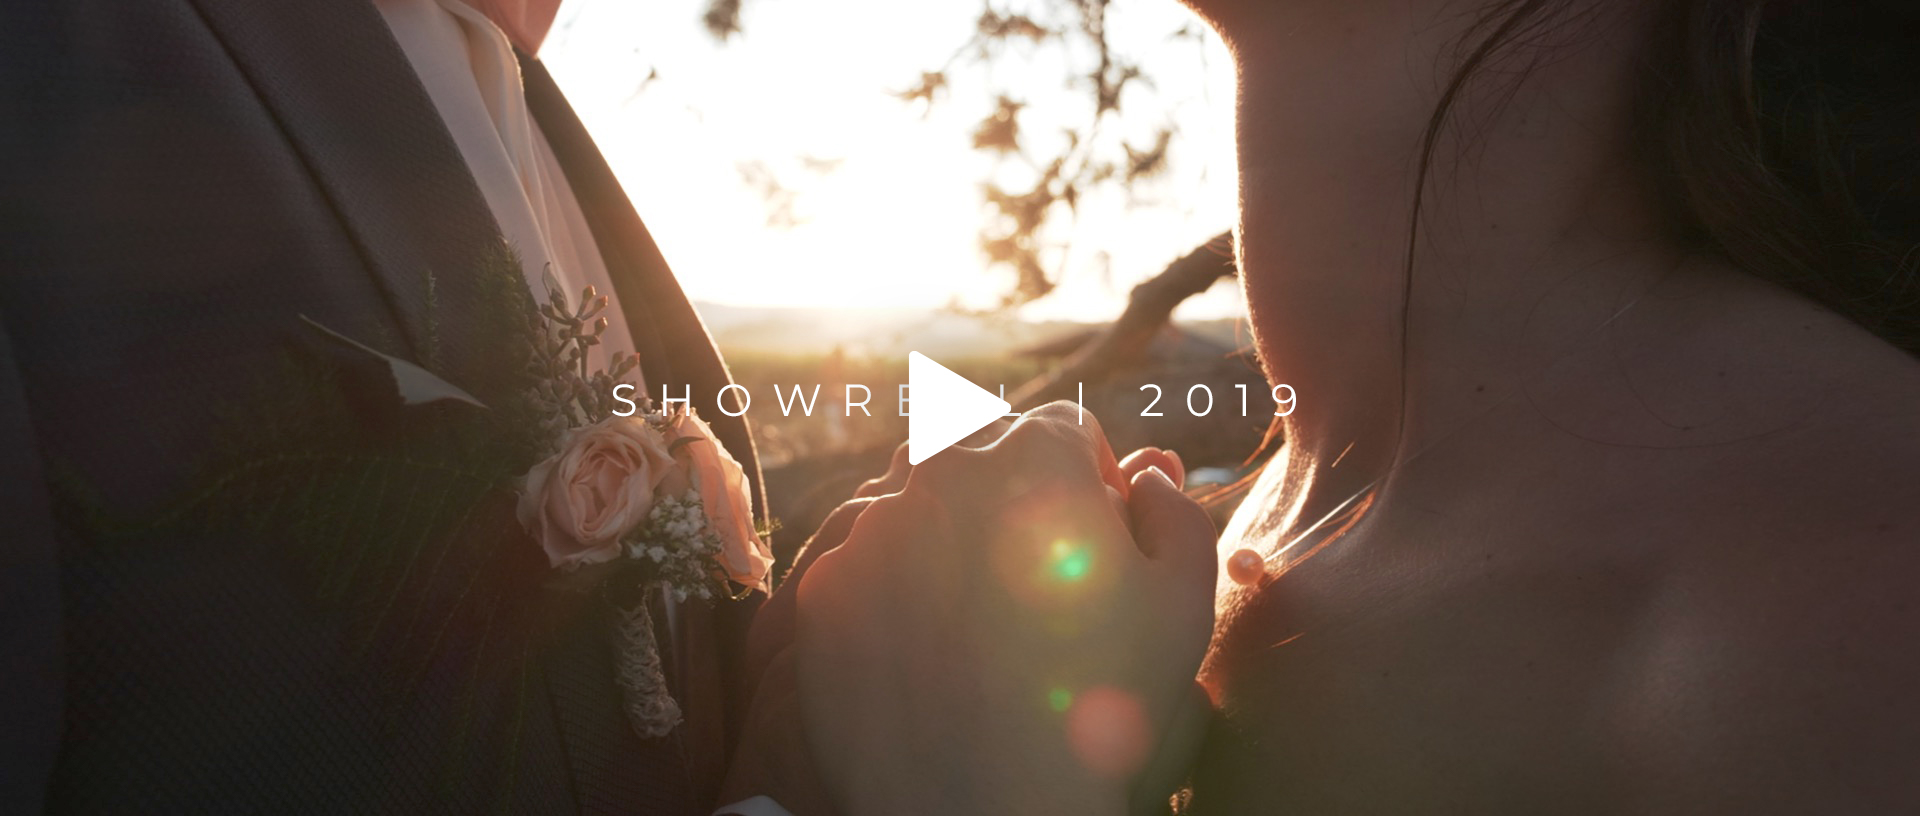 Showreel mariages 2019 | Vidéo des plus beaux moments